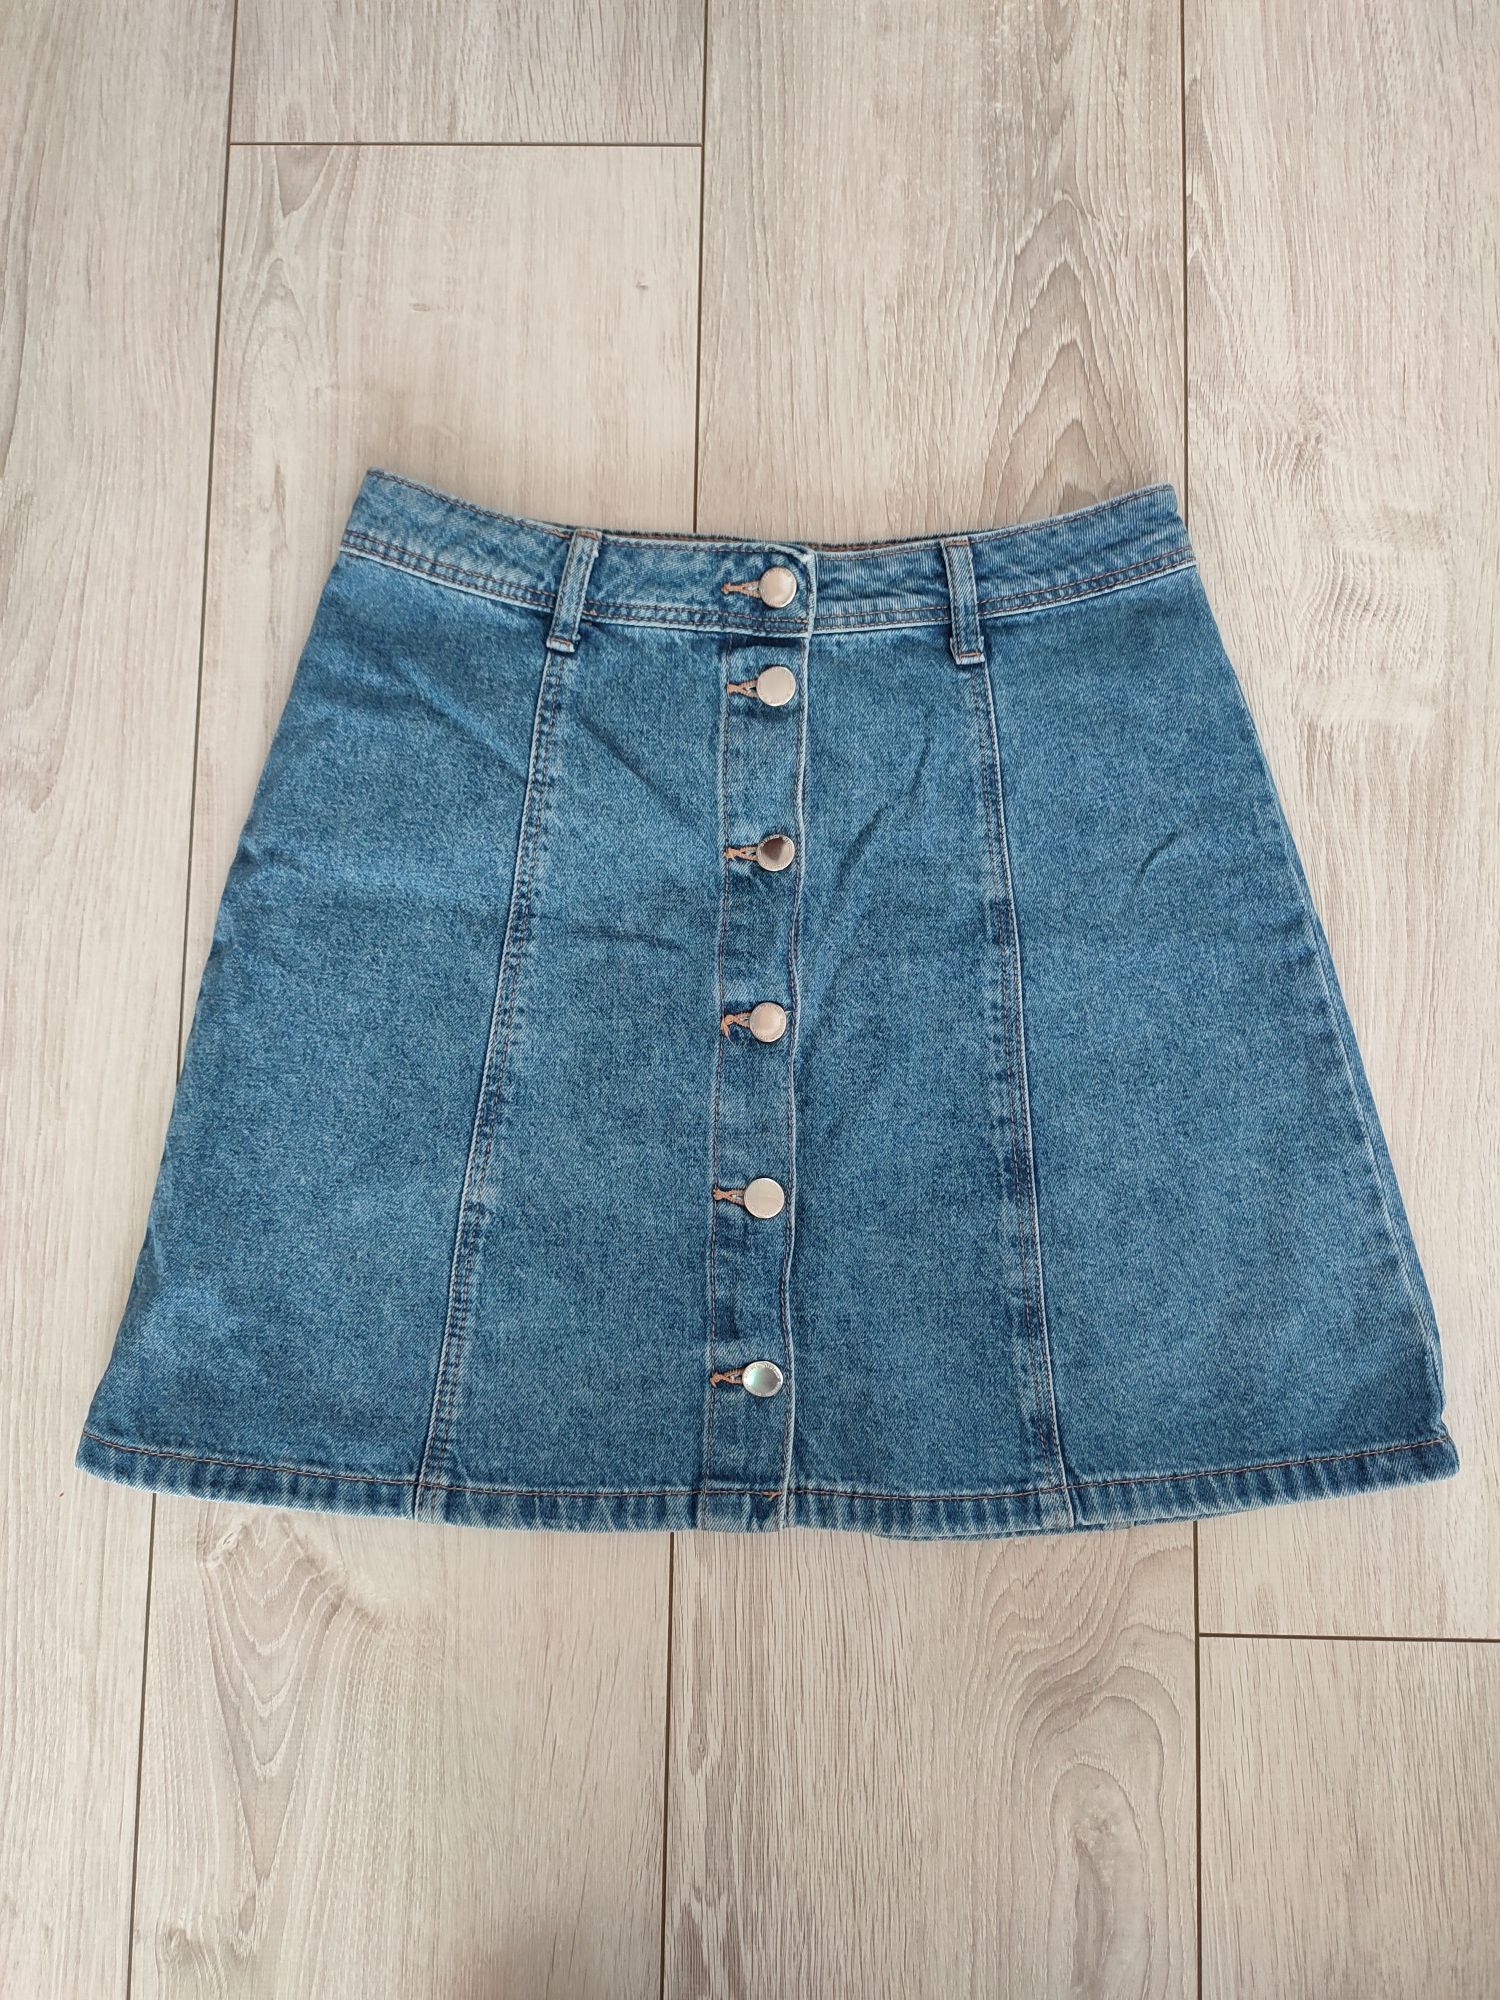 Trapezowa spódniczka jeansowa, H&M, rozmiar 38.